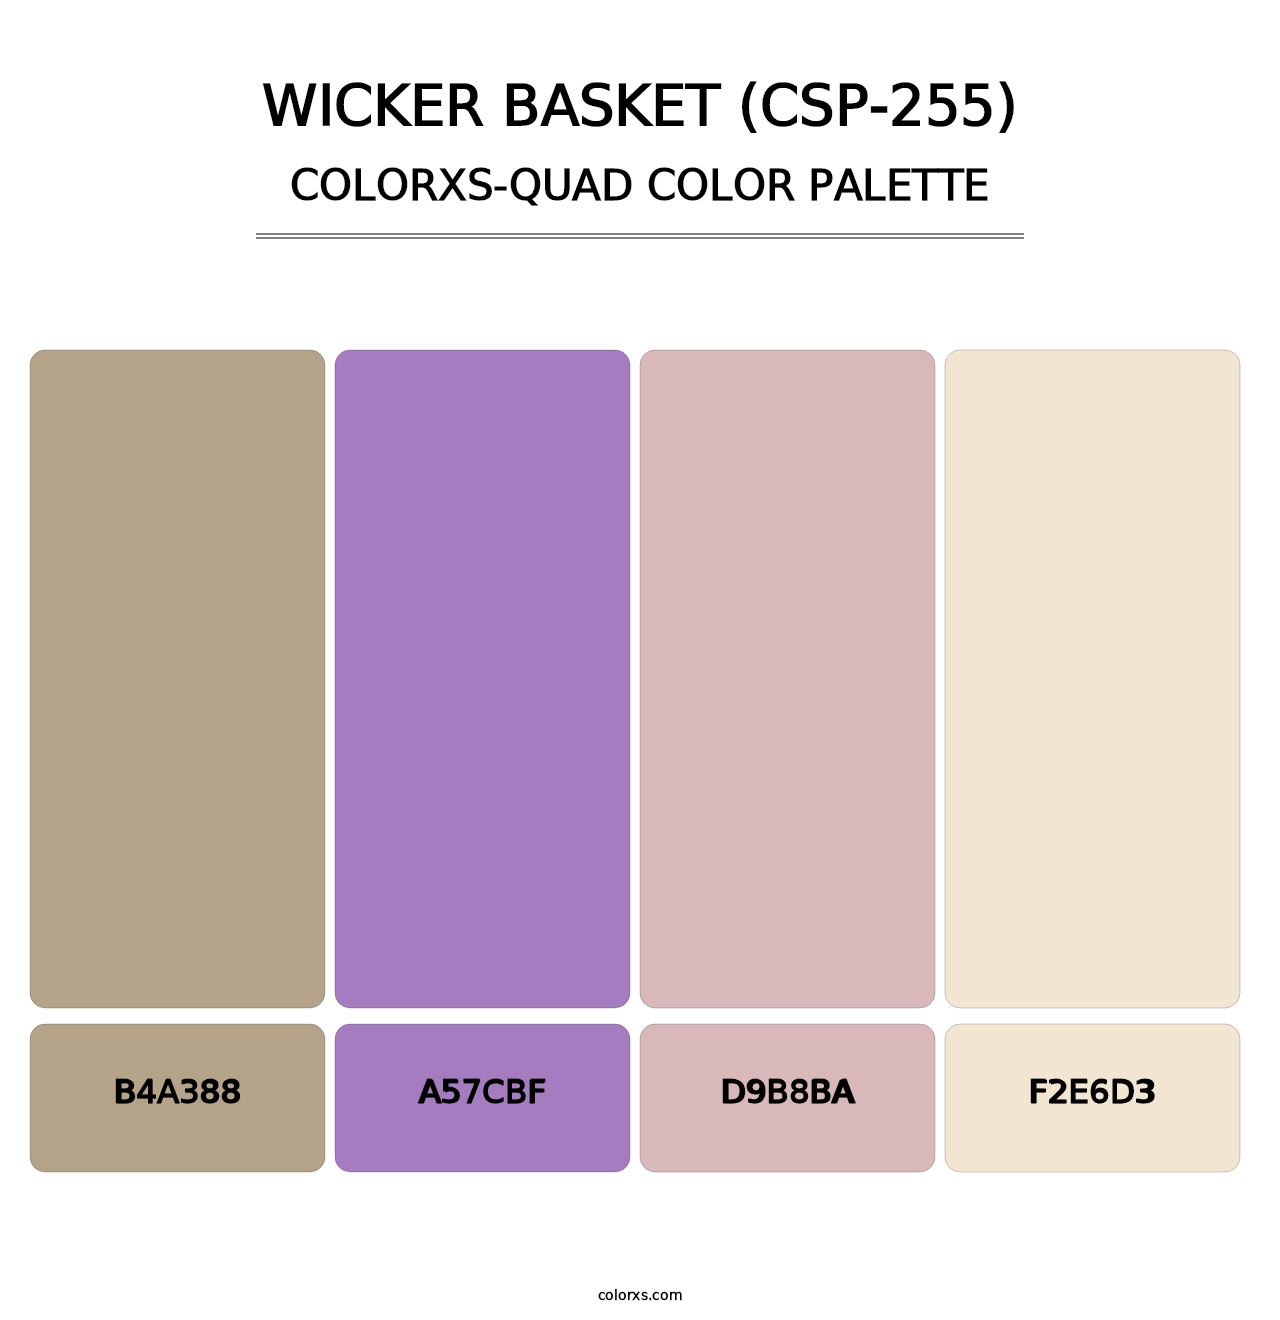 Wicker Basket (CSP-255) - Colorxs Quad Palette